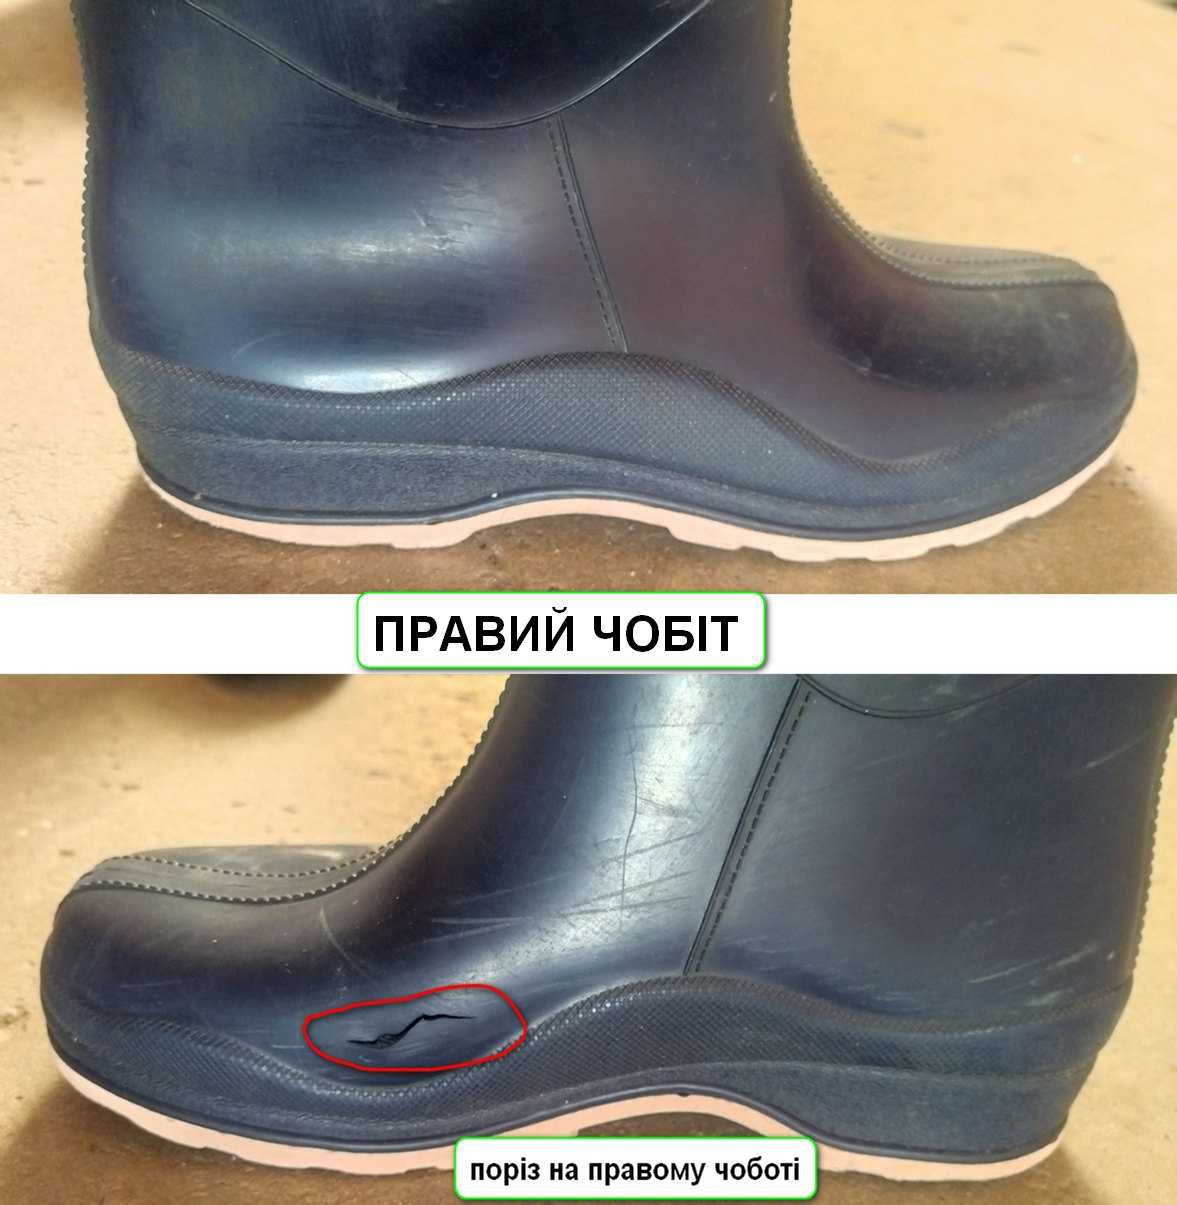 Чоботи гумові жіночі 39розмір Realpaks(Україна)потребують реставрації